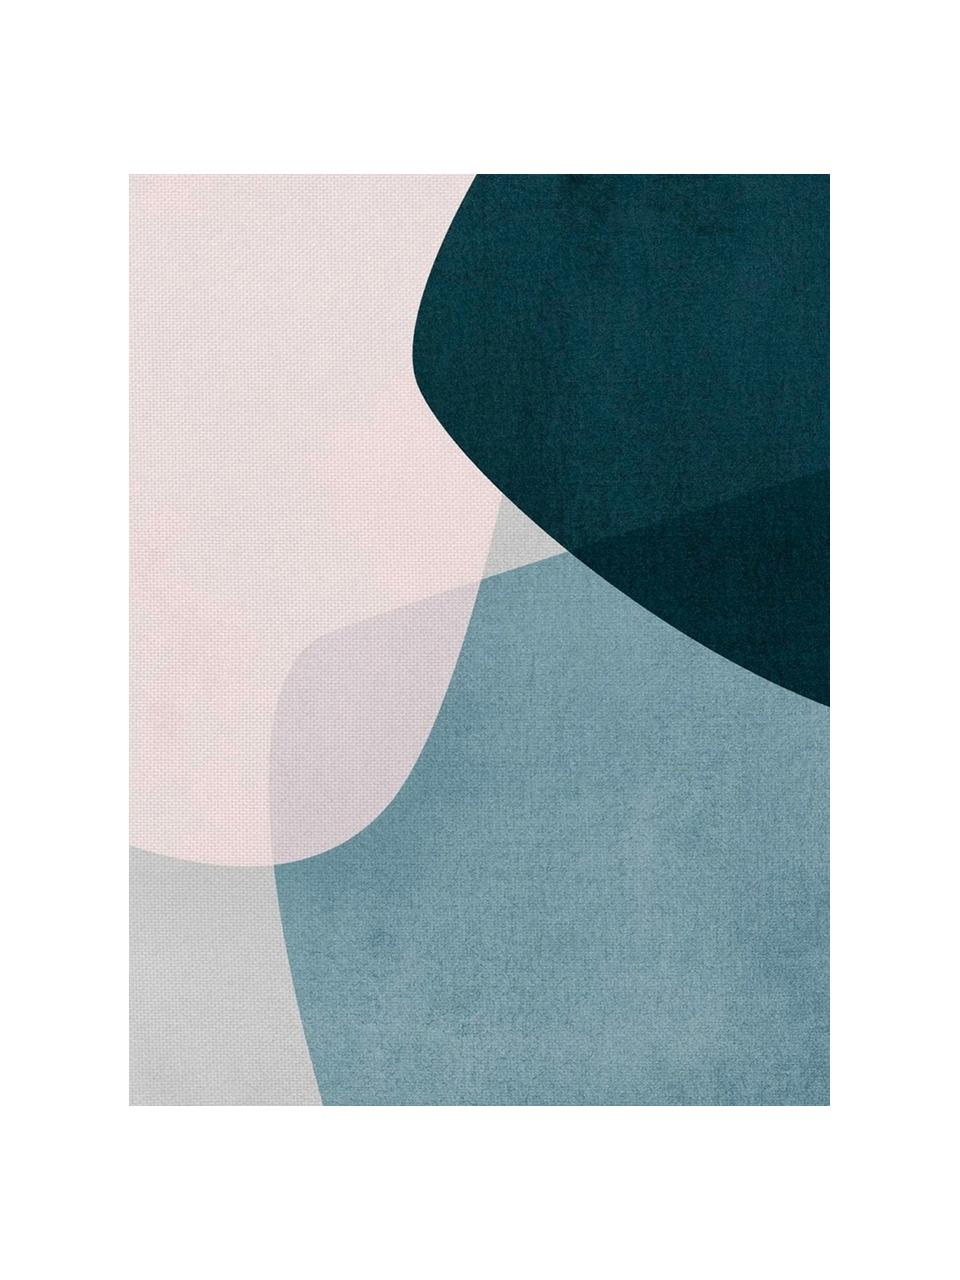 Baumwoll-Servietten Graphic, 4 Stück, Baumwolle, Dunkelblau, Blau, Grau, Rosa, 40 x 40 cm